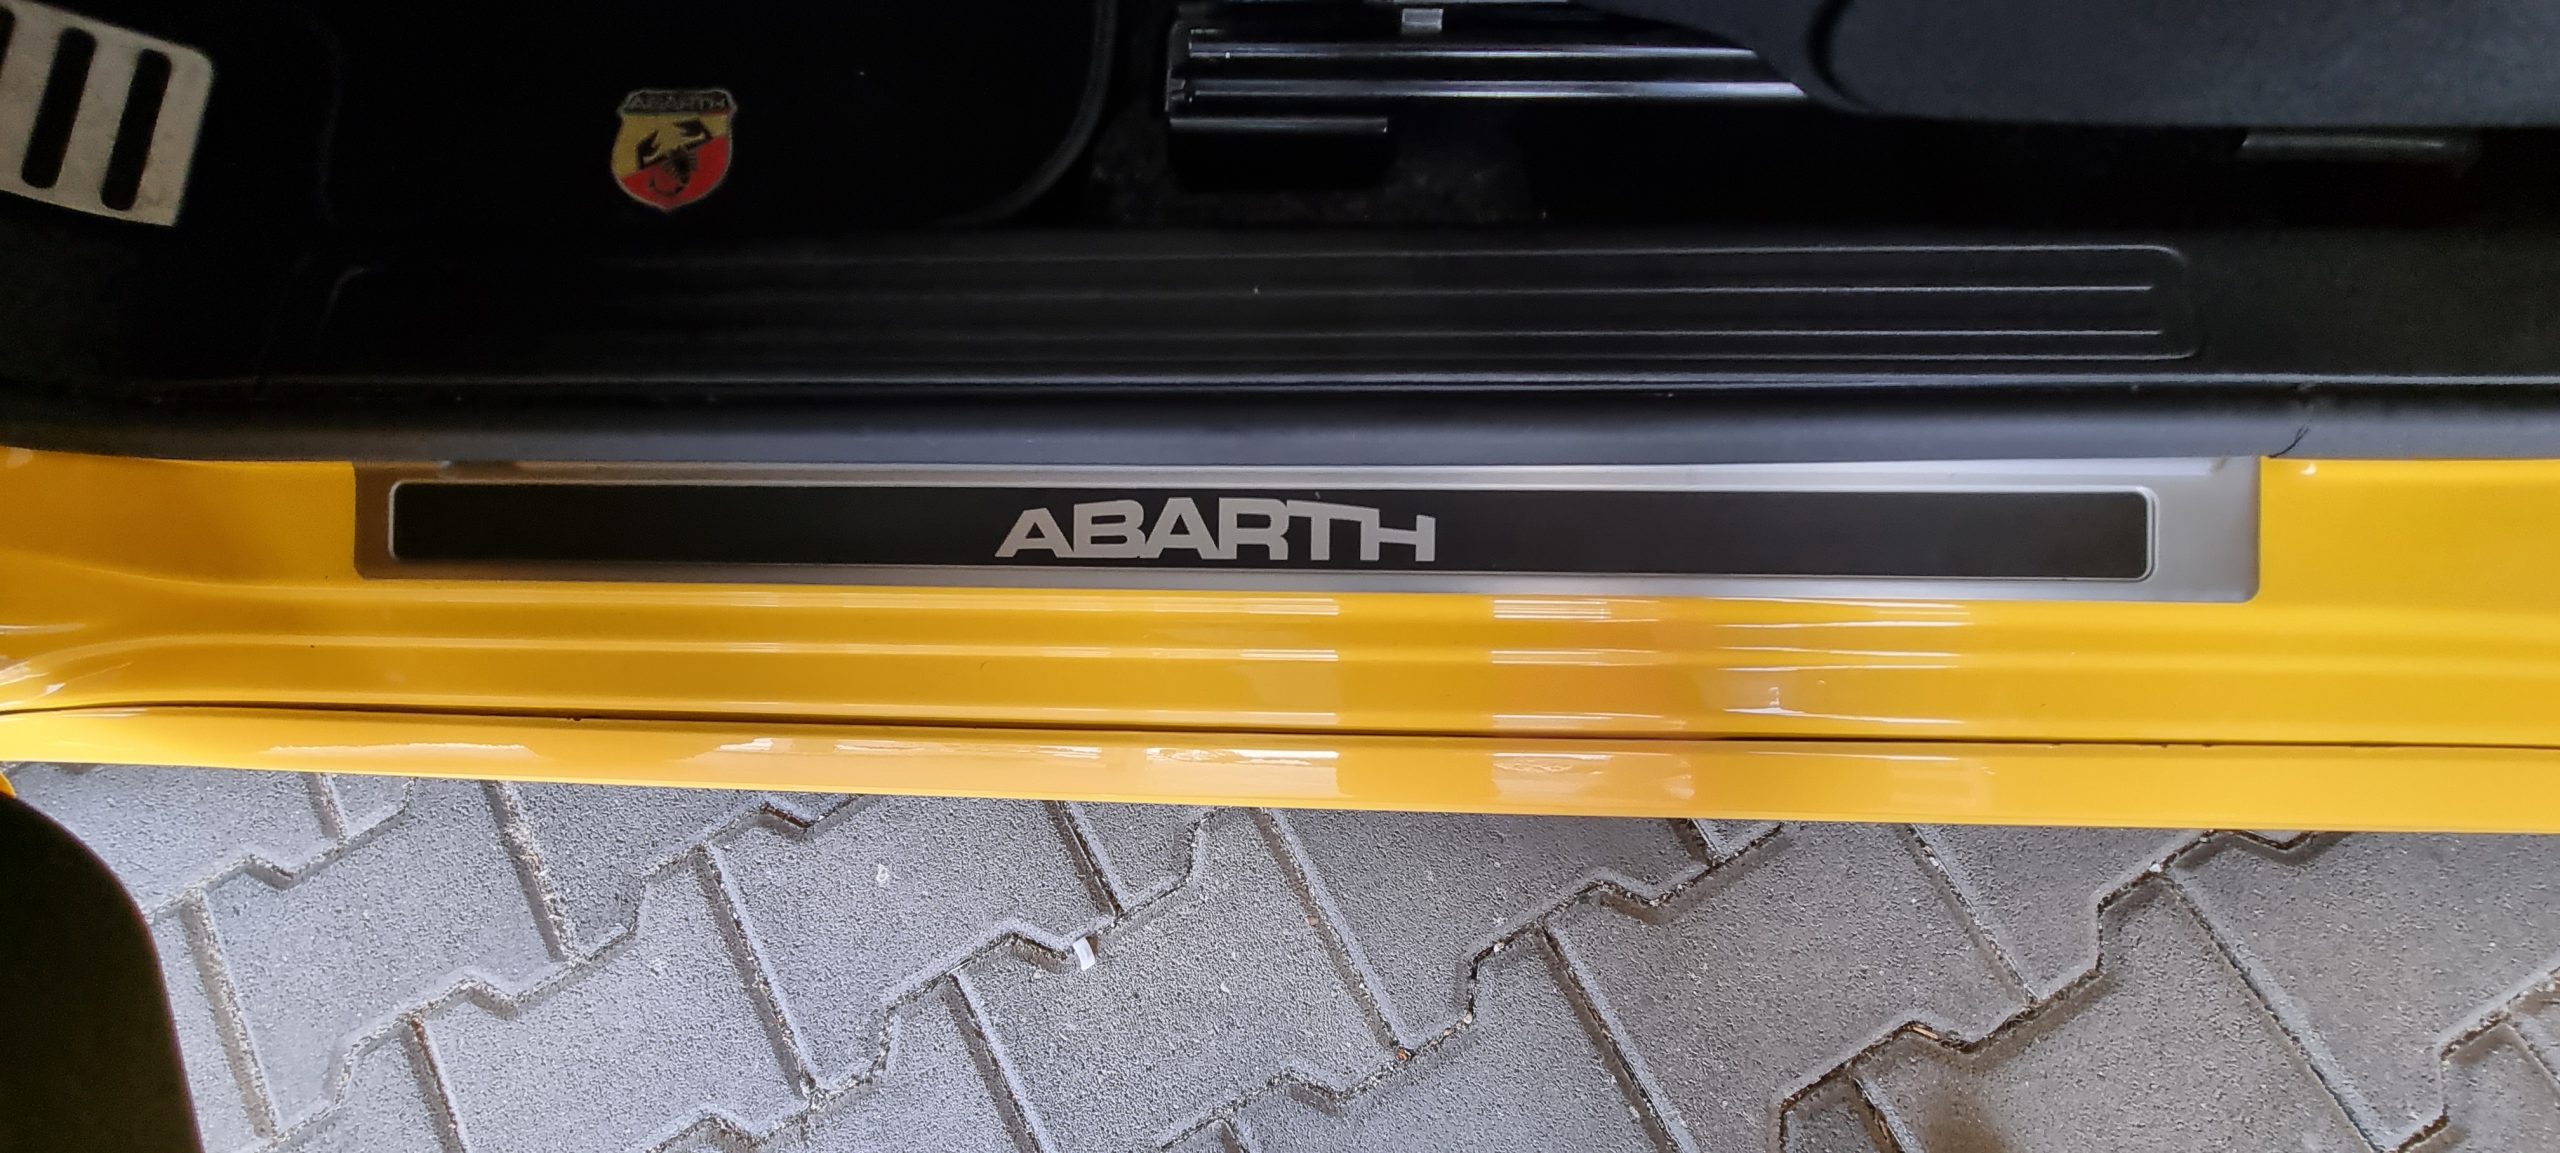 FIAT ABARTH 595 1.4 TURBO T-Jet